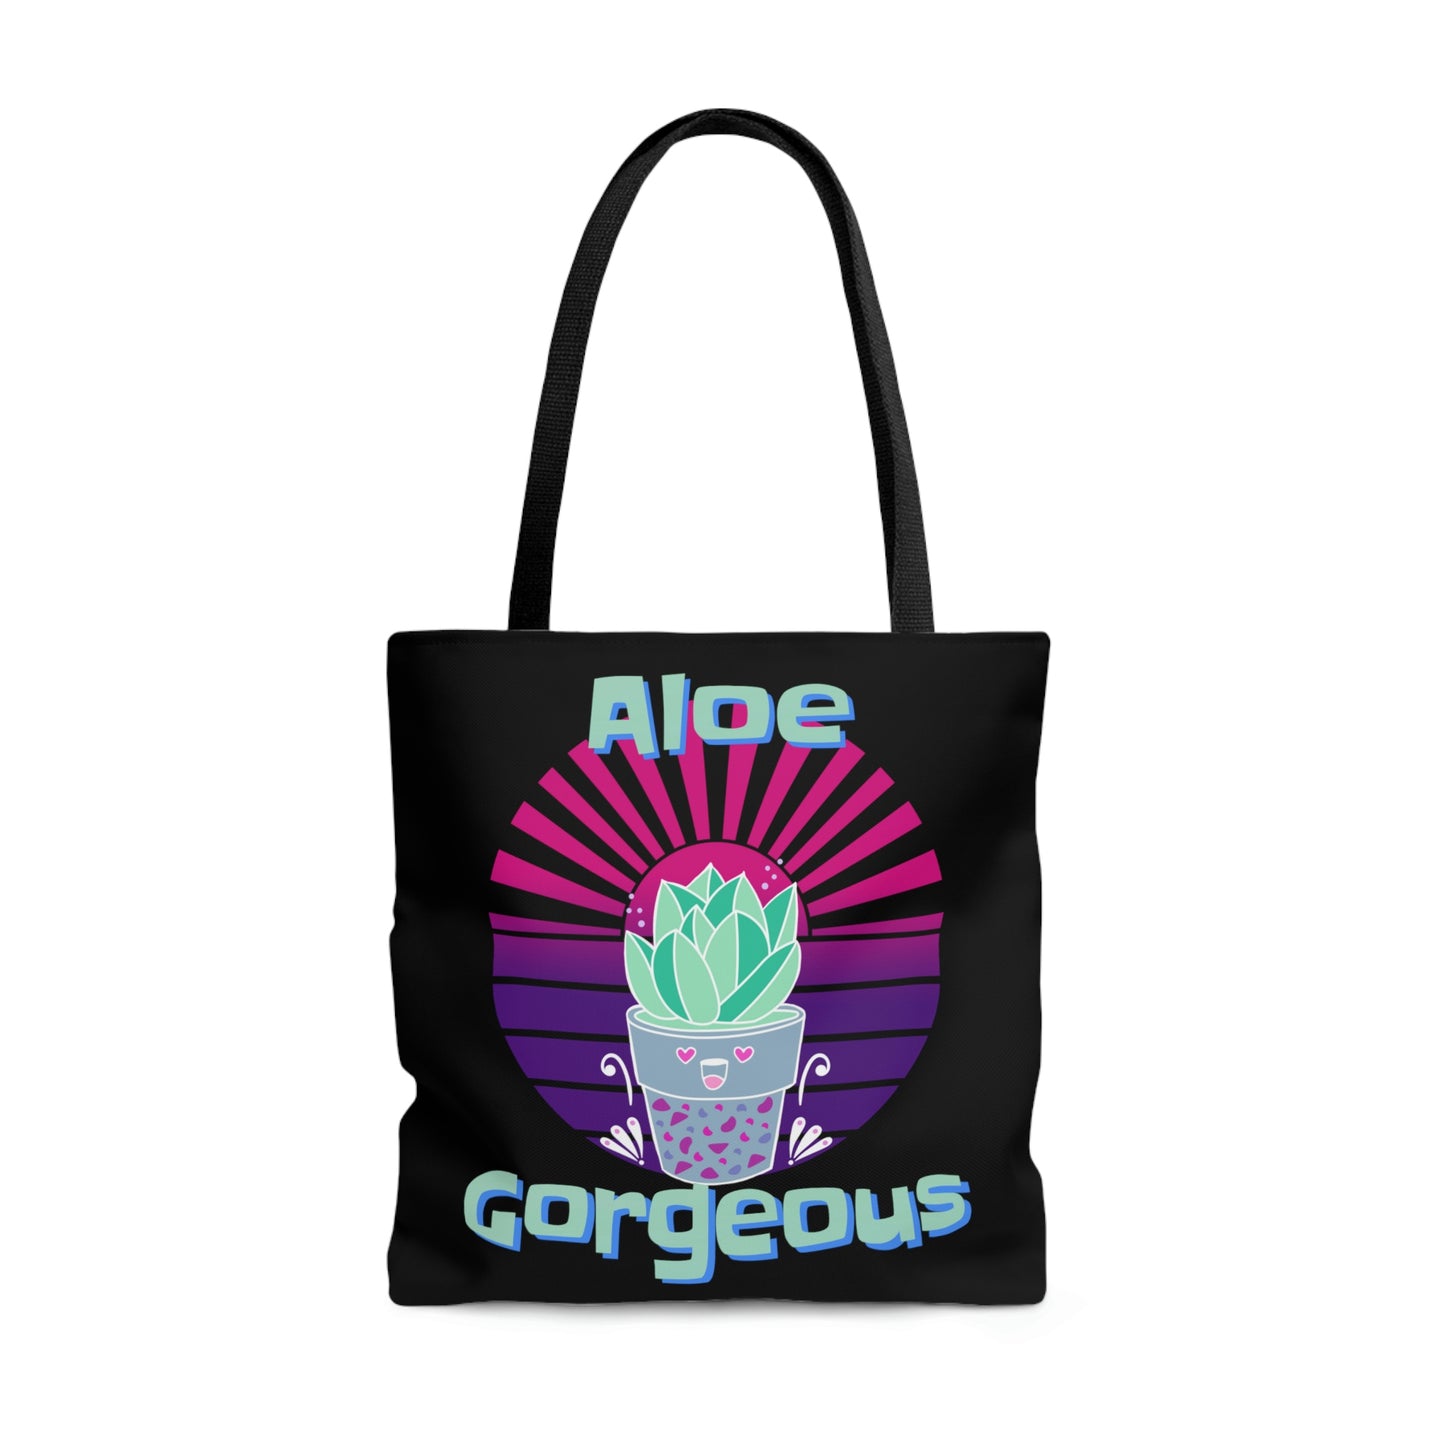 Tote Bag: Aloe Gorgeous - Black